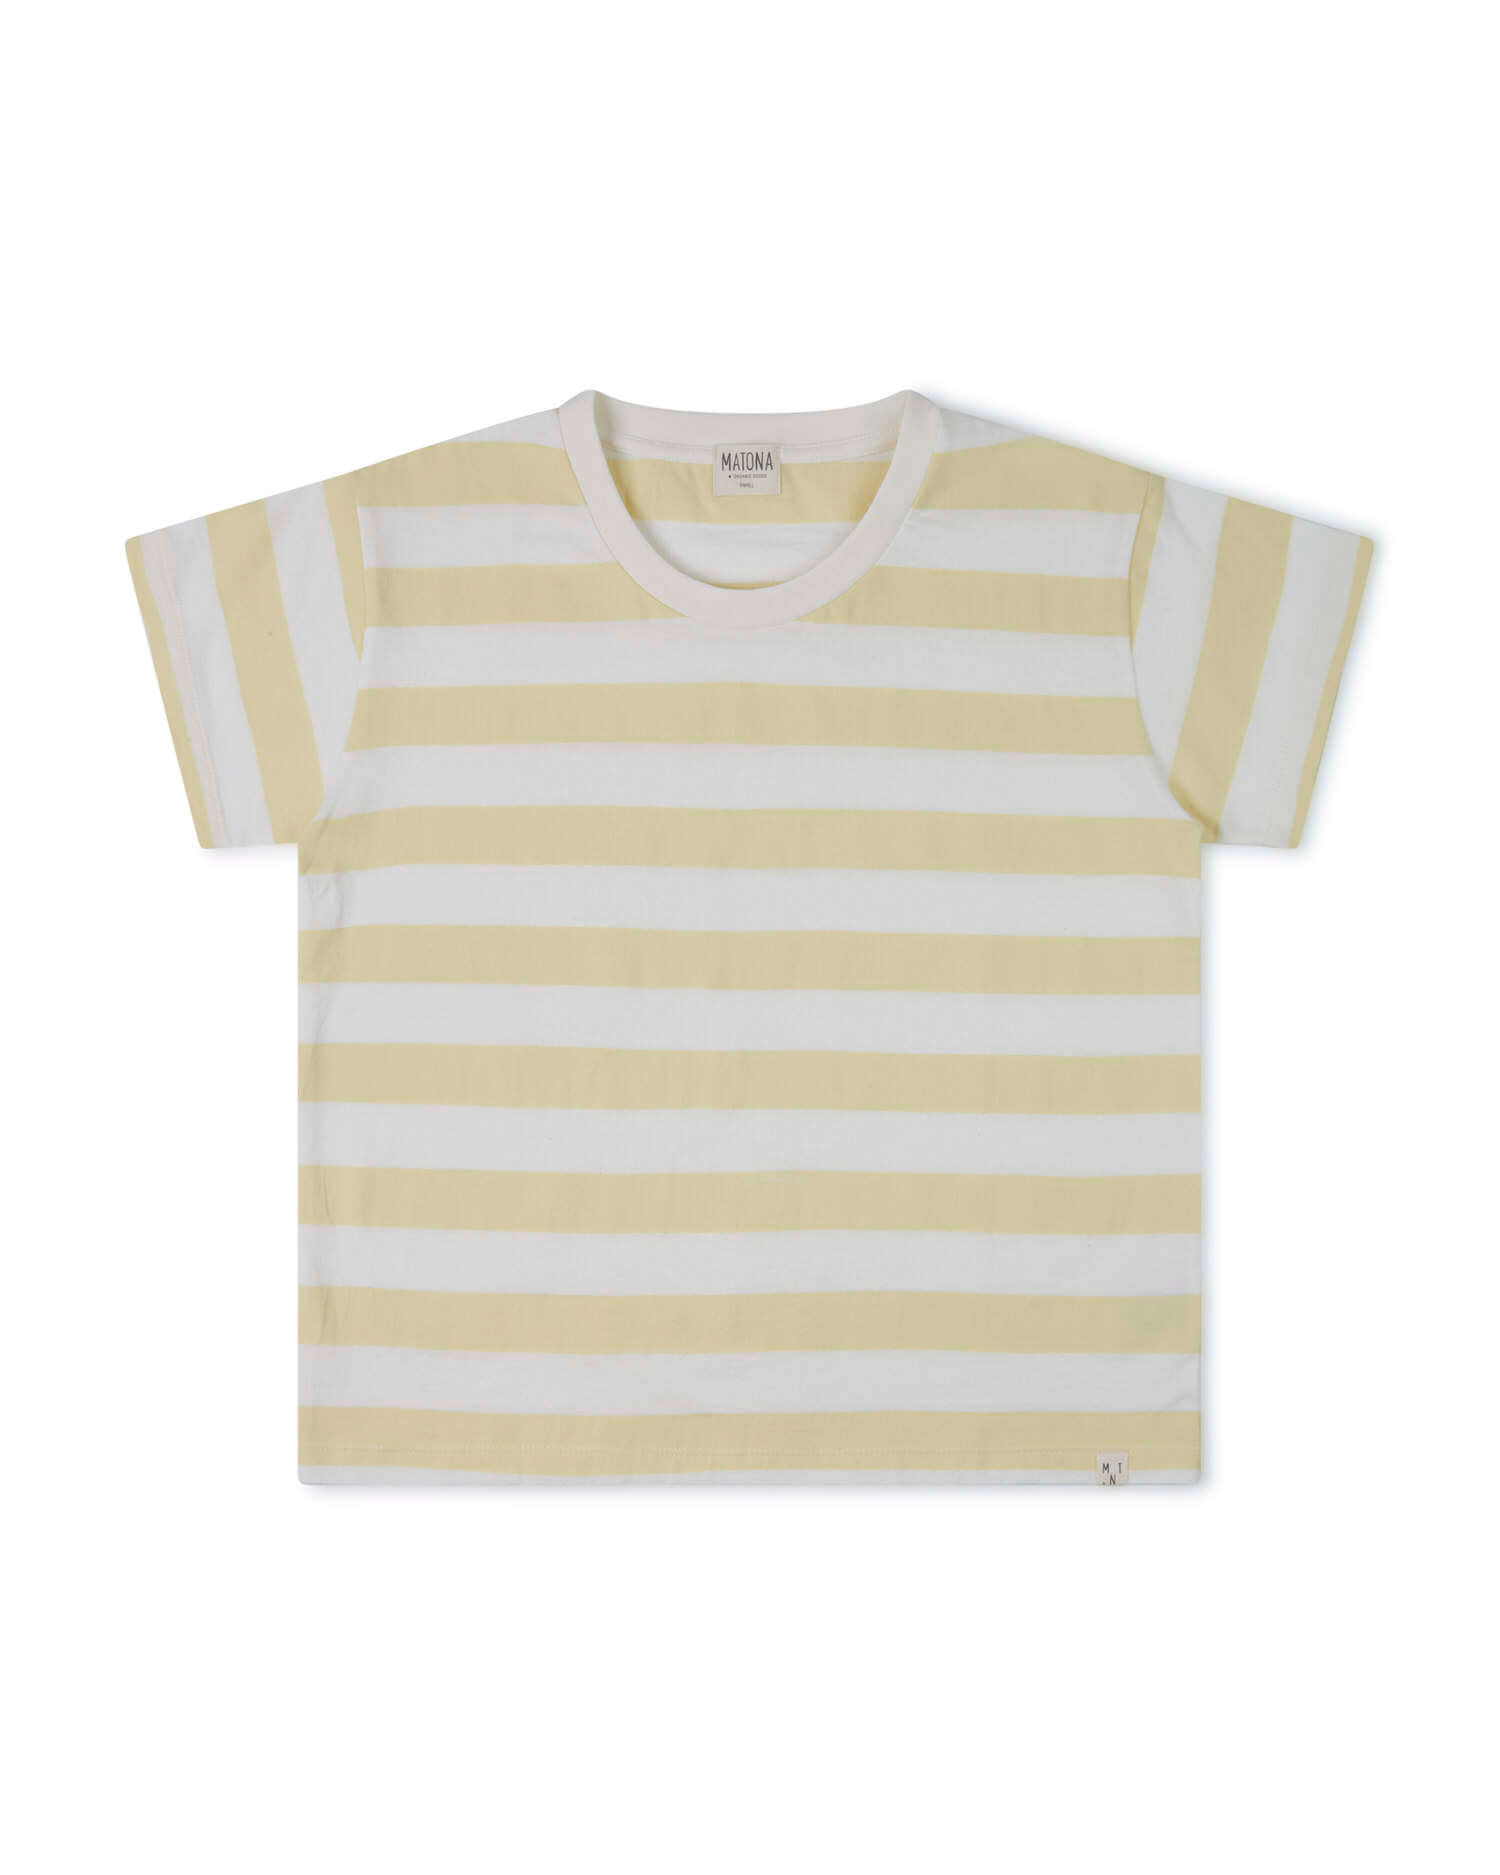 T-shirt rayé jaune et blanc en coton 100% biologique de Matona